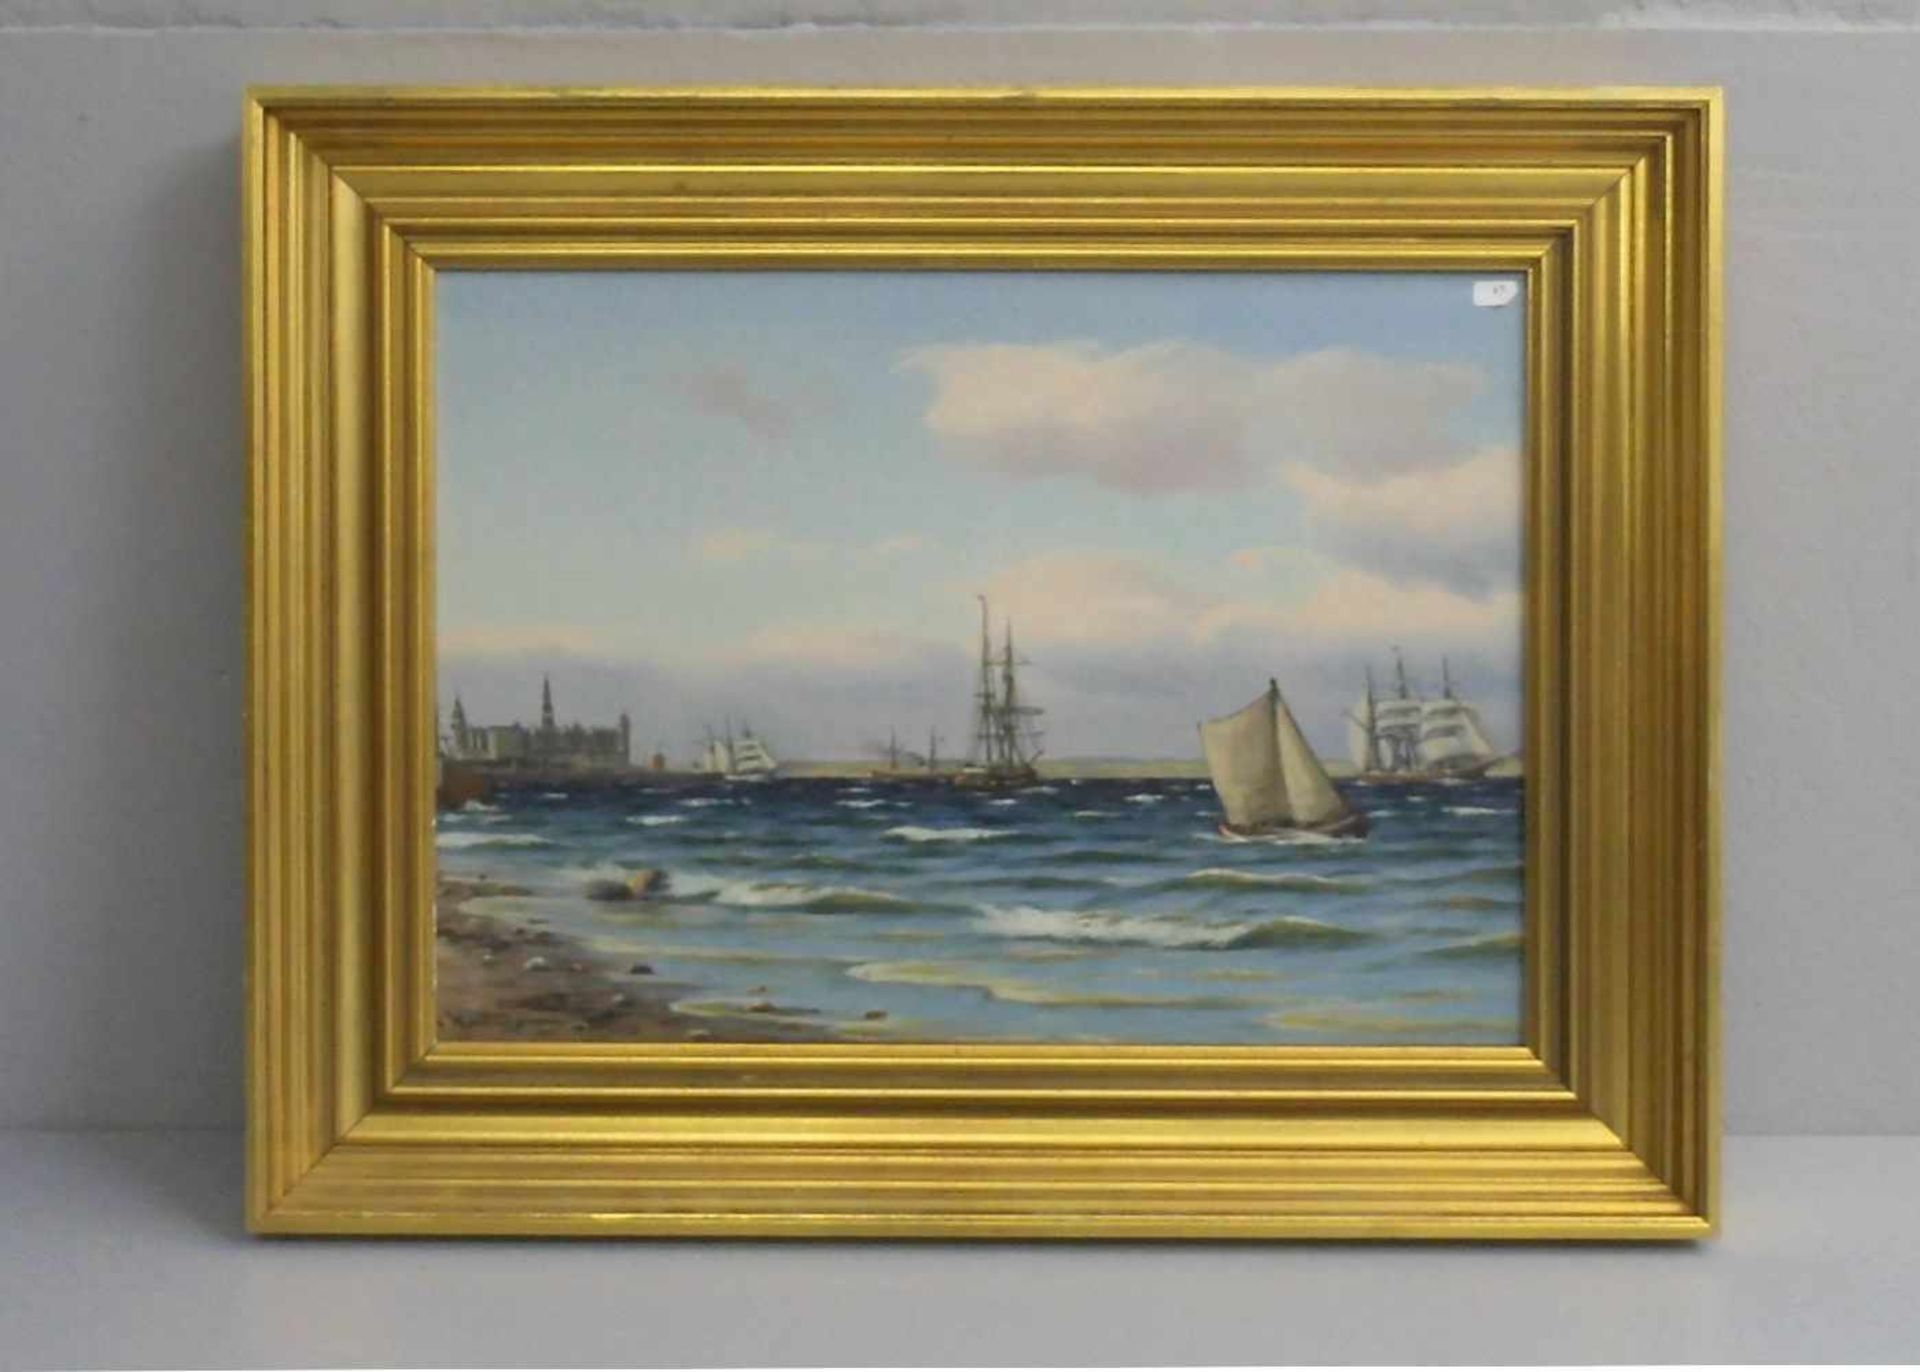 NEUMANN, JOHAN JENS (Kopenhagen 1860-1940), Gemälde / painting: "Schiffsverkehr vor dänischer